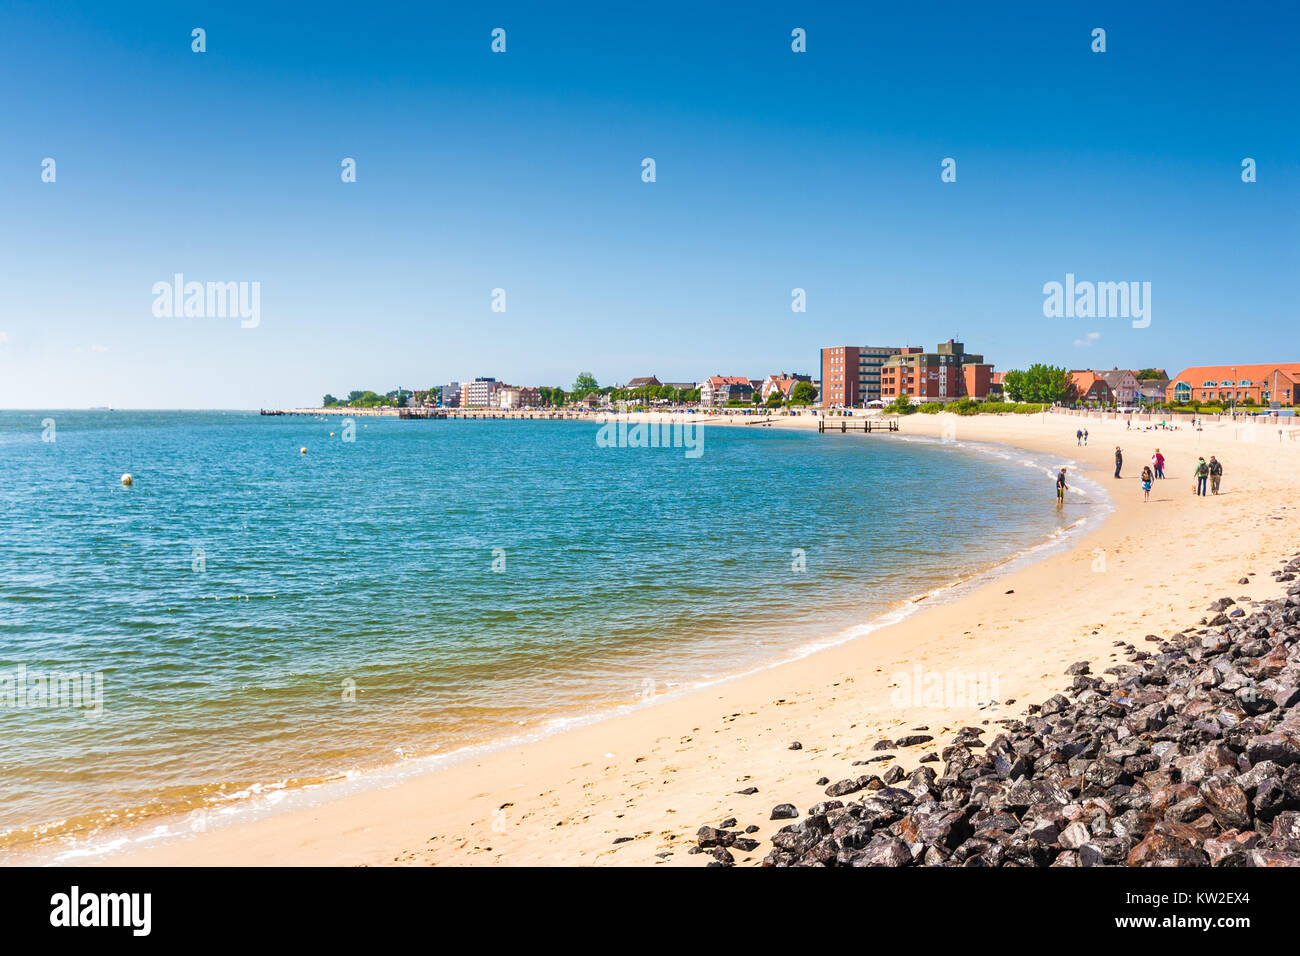 Hermoso paisaje de playa en la isla de Foehr, la segunda mayor isla del Mar del Norte de Alemania, en el Estado federado de Schleswig-Holstein, Alemania Foto de stock